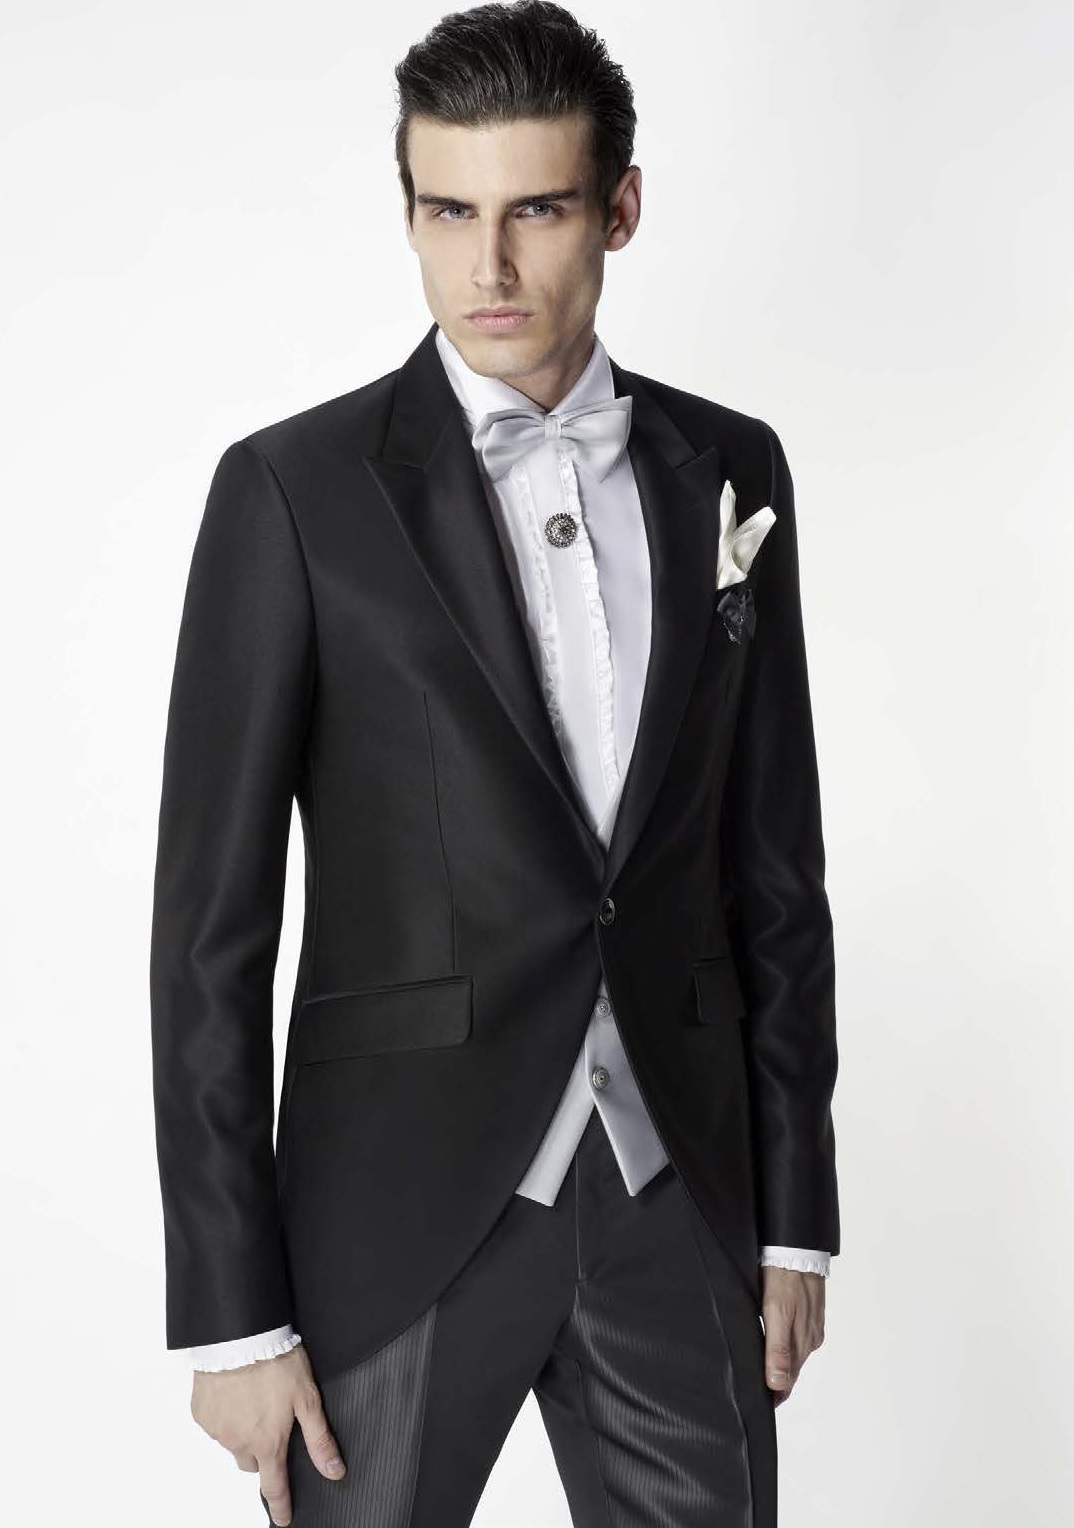 Italian Made Men Suits - Tuxedo Accessories